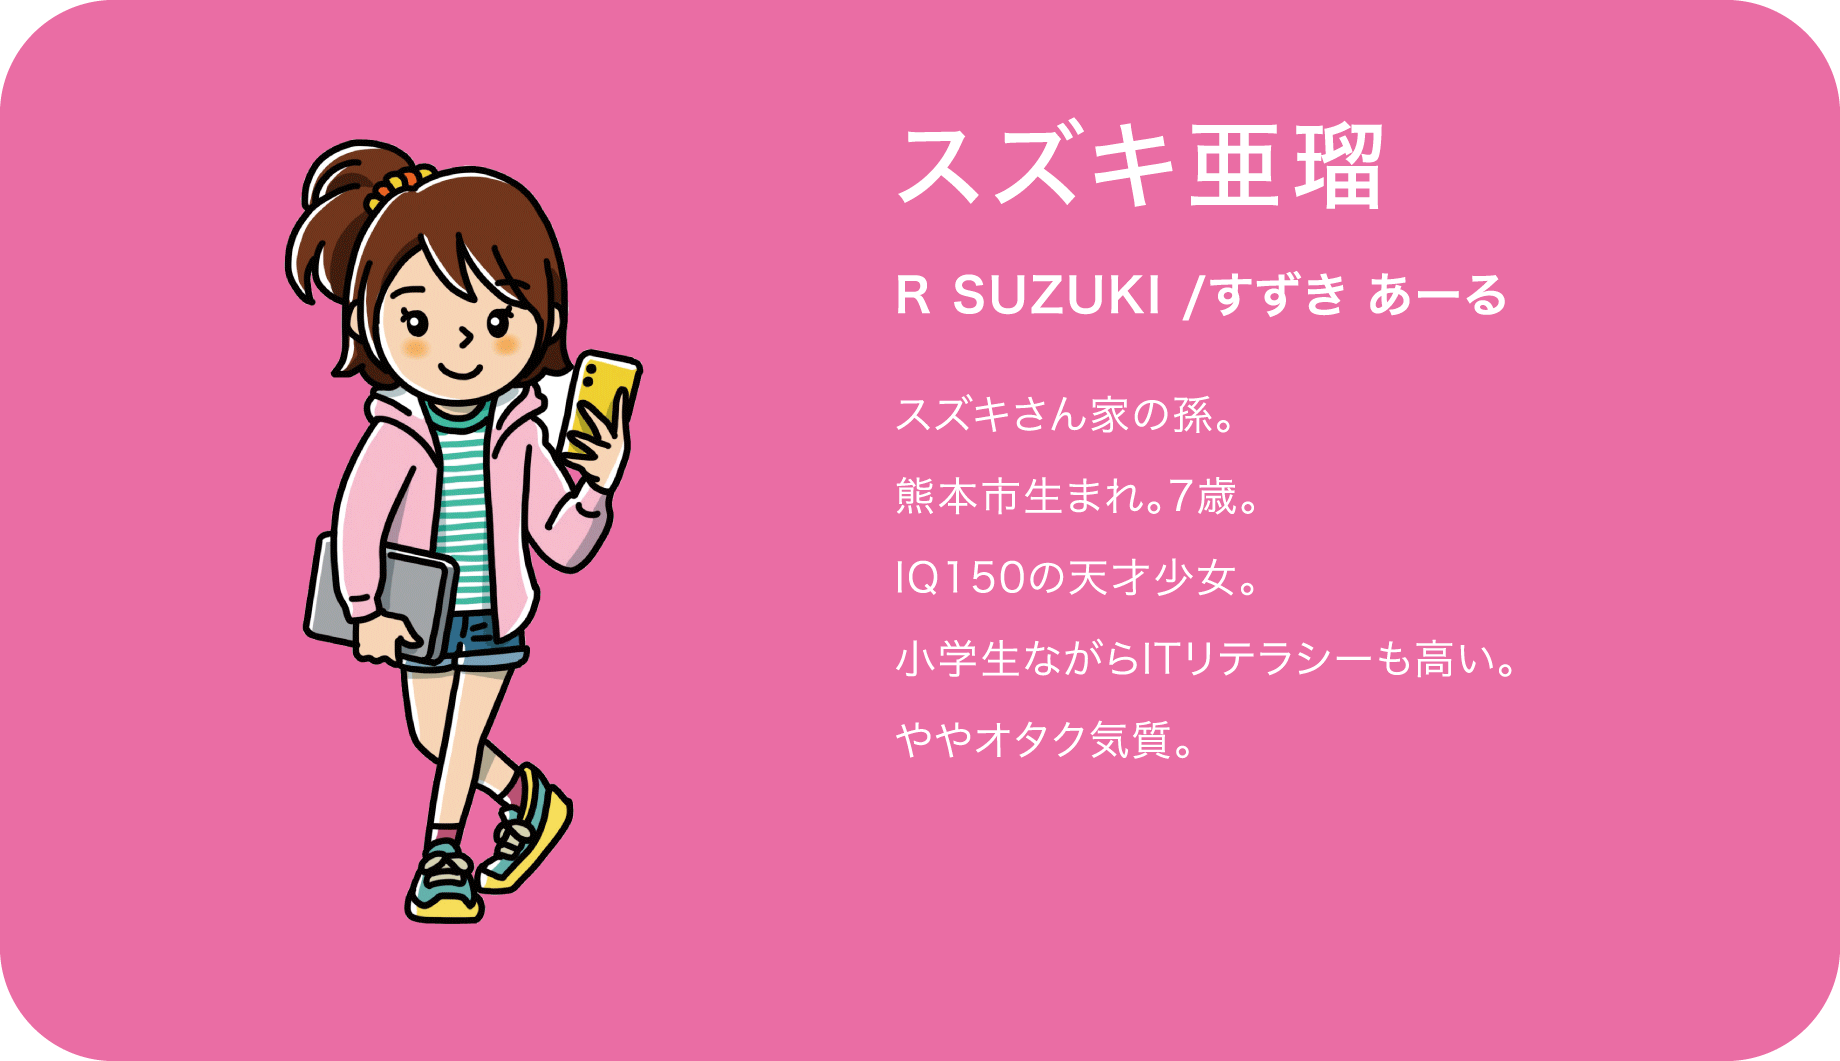 スズキ亜瑠（R SUZUKI /すずき あーる）スズキさん家の孫。熊本市生まれ。7歳。IQ150の天才少女。小学生ながらITリテラシーも高い。ややオタク気質。